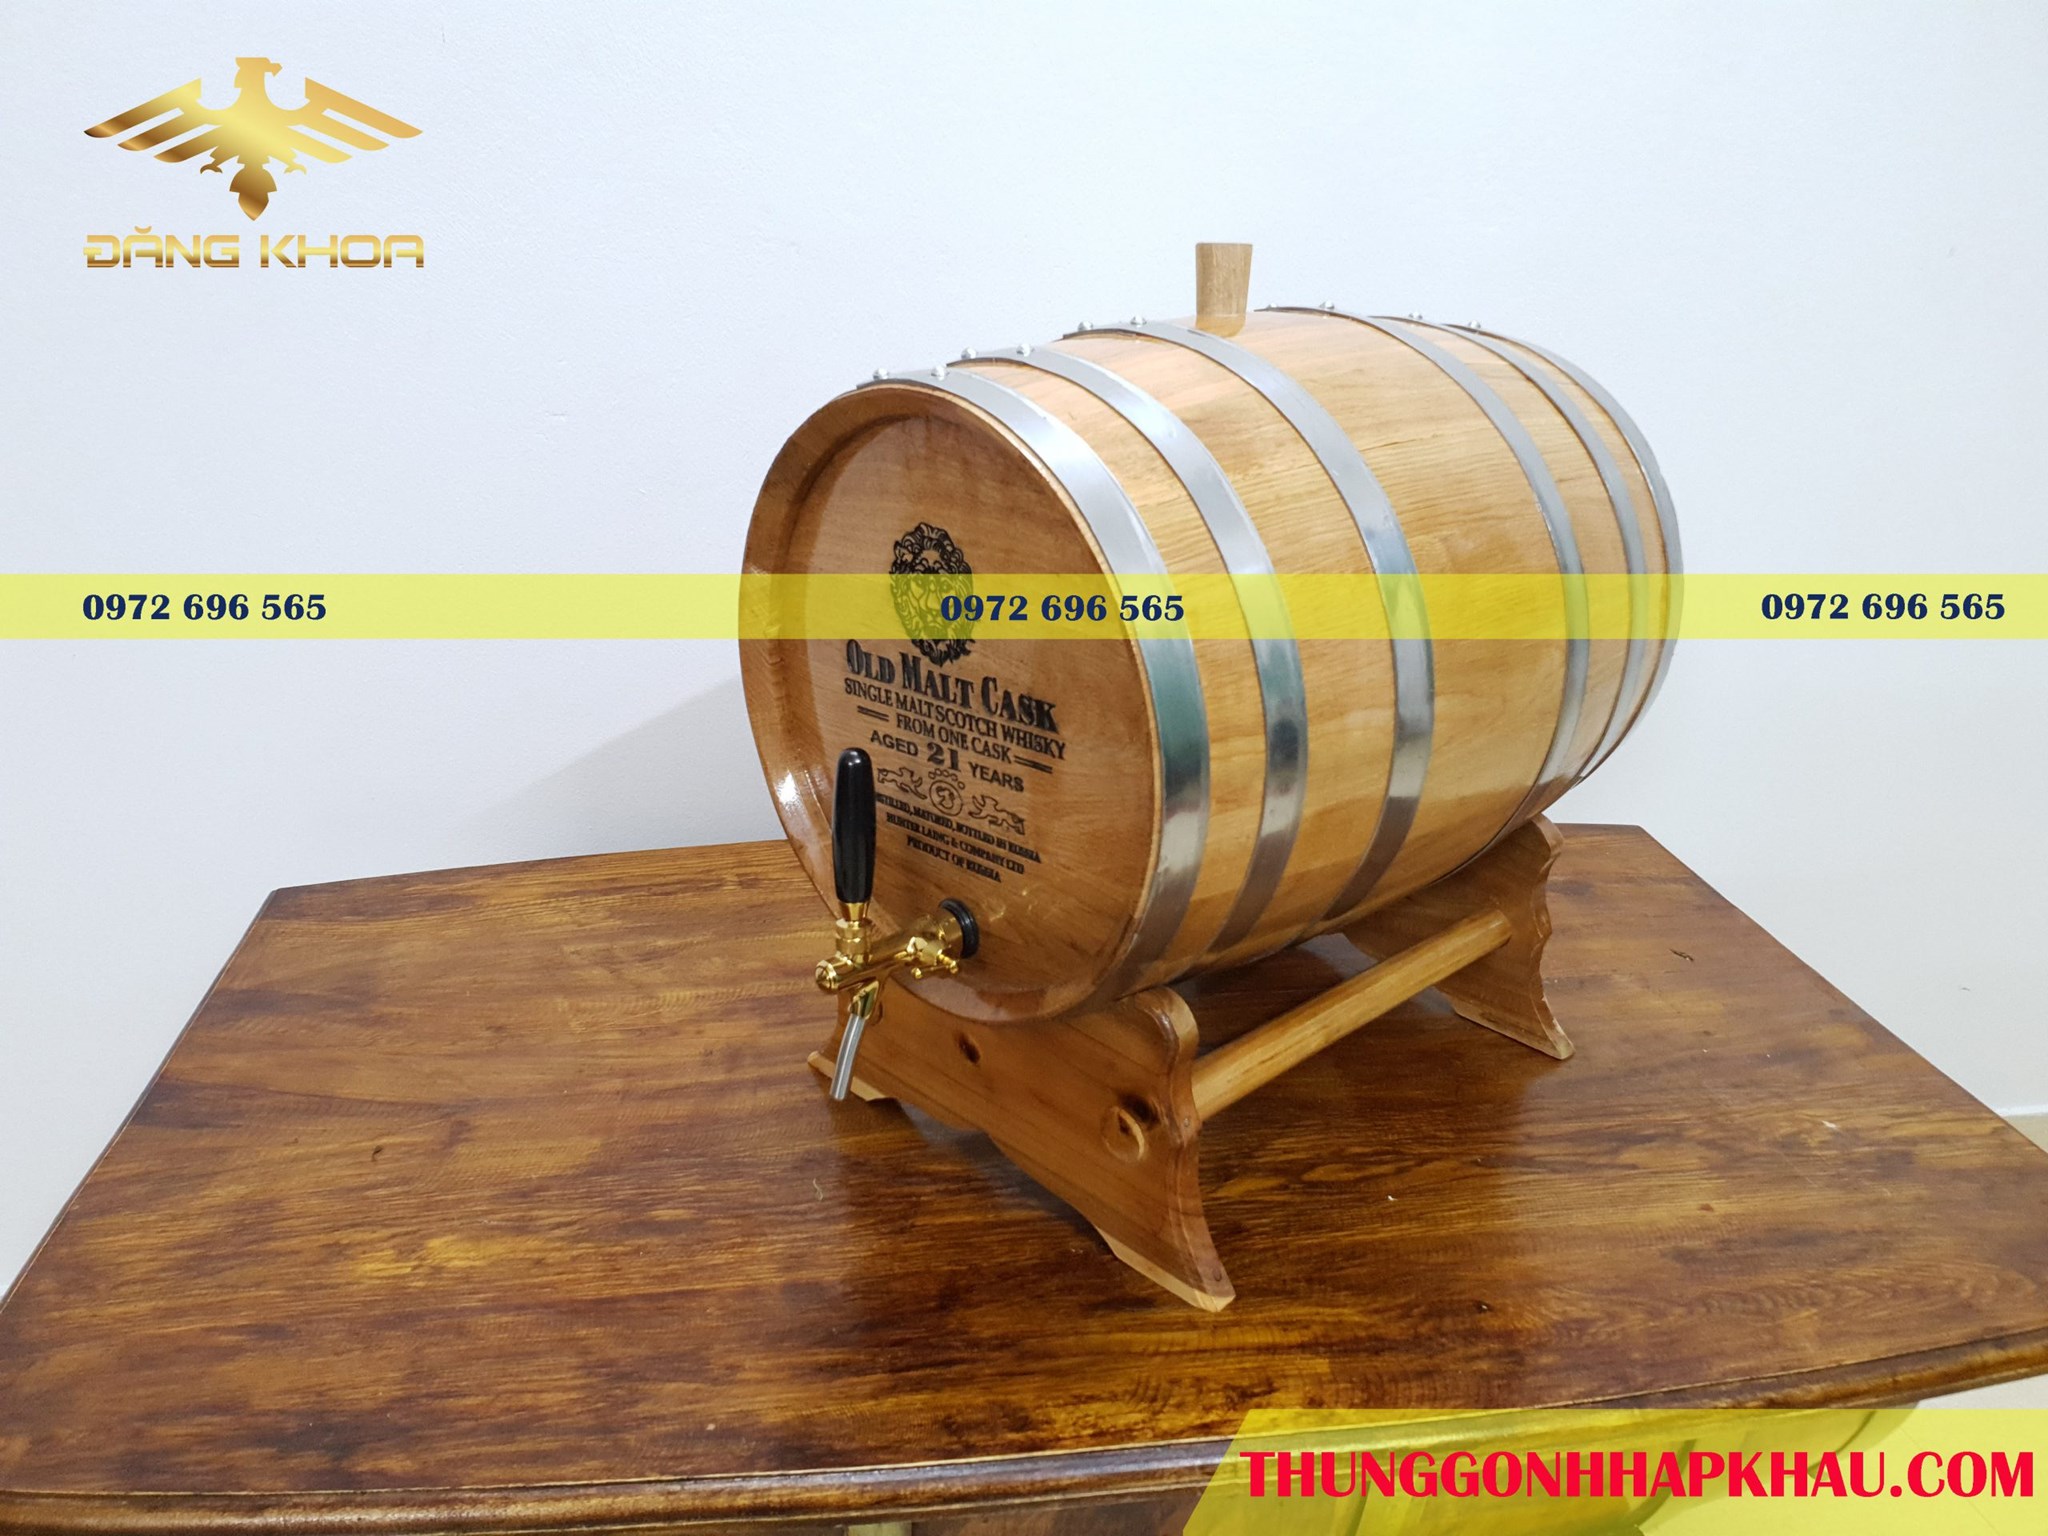 Quy trình ngâm rượu trong thùng gỗ sồi chuẩn nhà hàng 2020